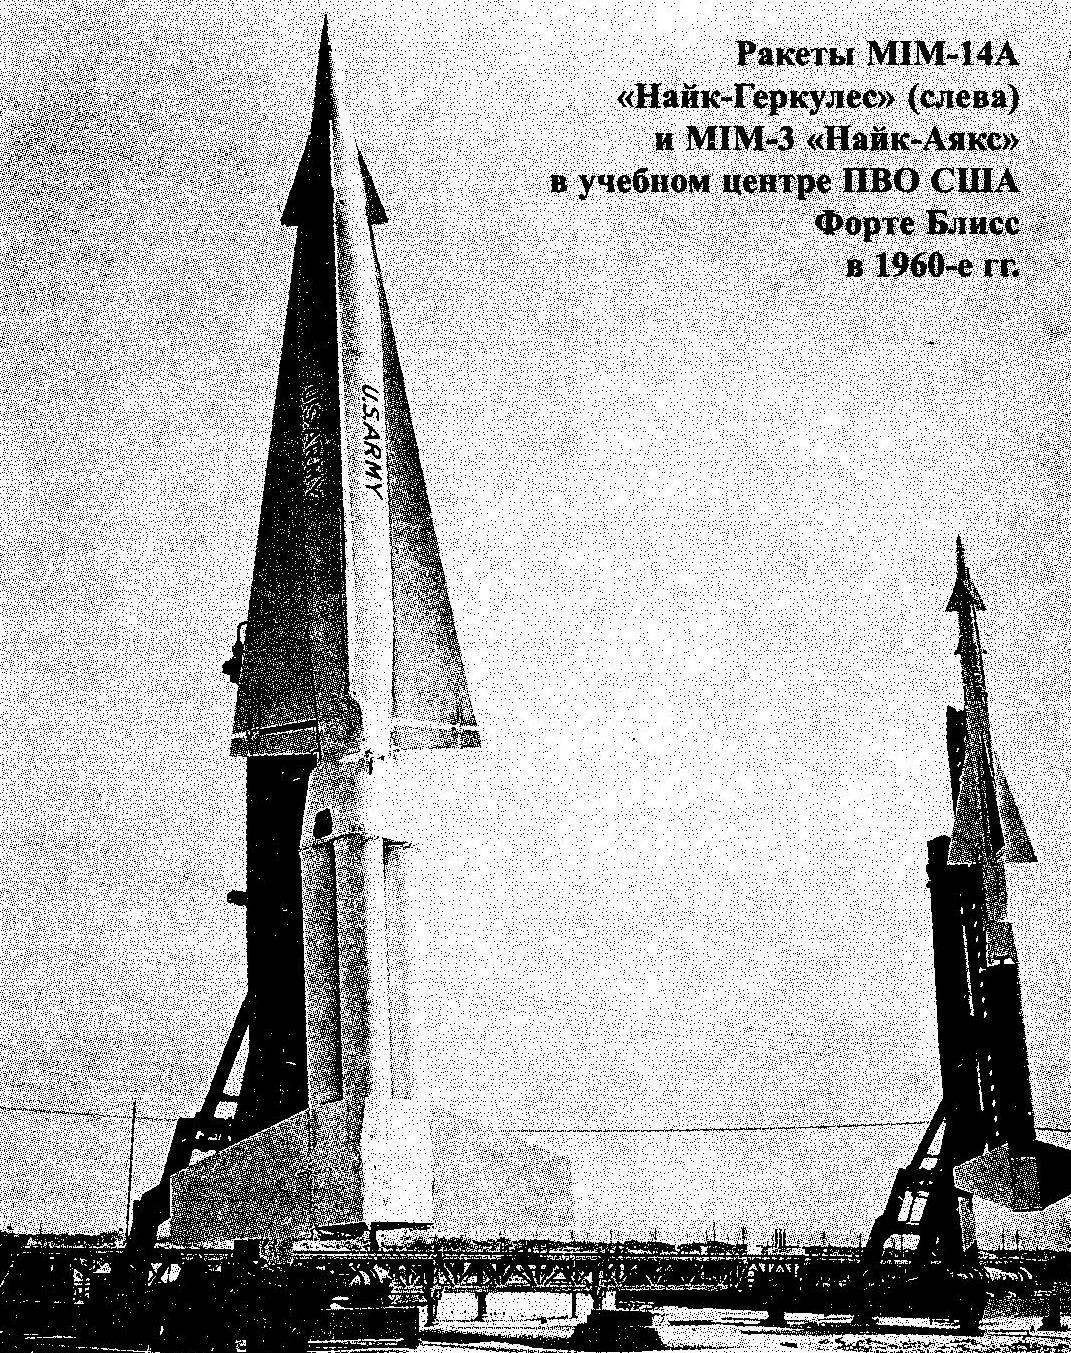 Ракеты MIM-14А «Найк-Геркулес» (слева) и MIM-3 «Найк-Аякс» в учебном центре ПВО США Форте Блисс в 1960-е гг.